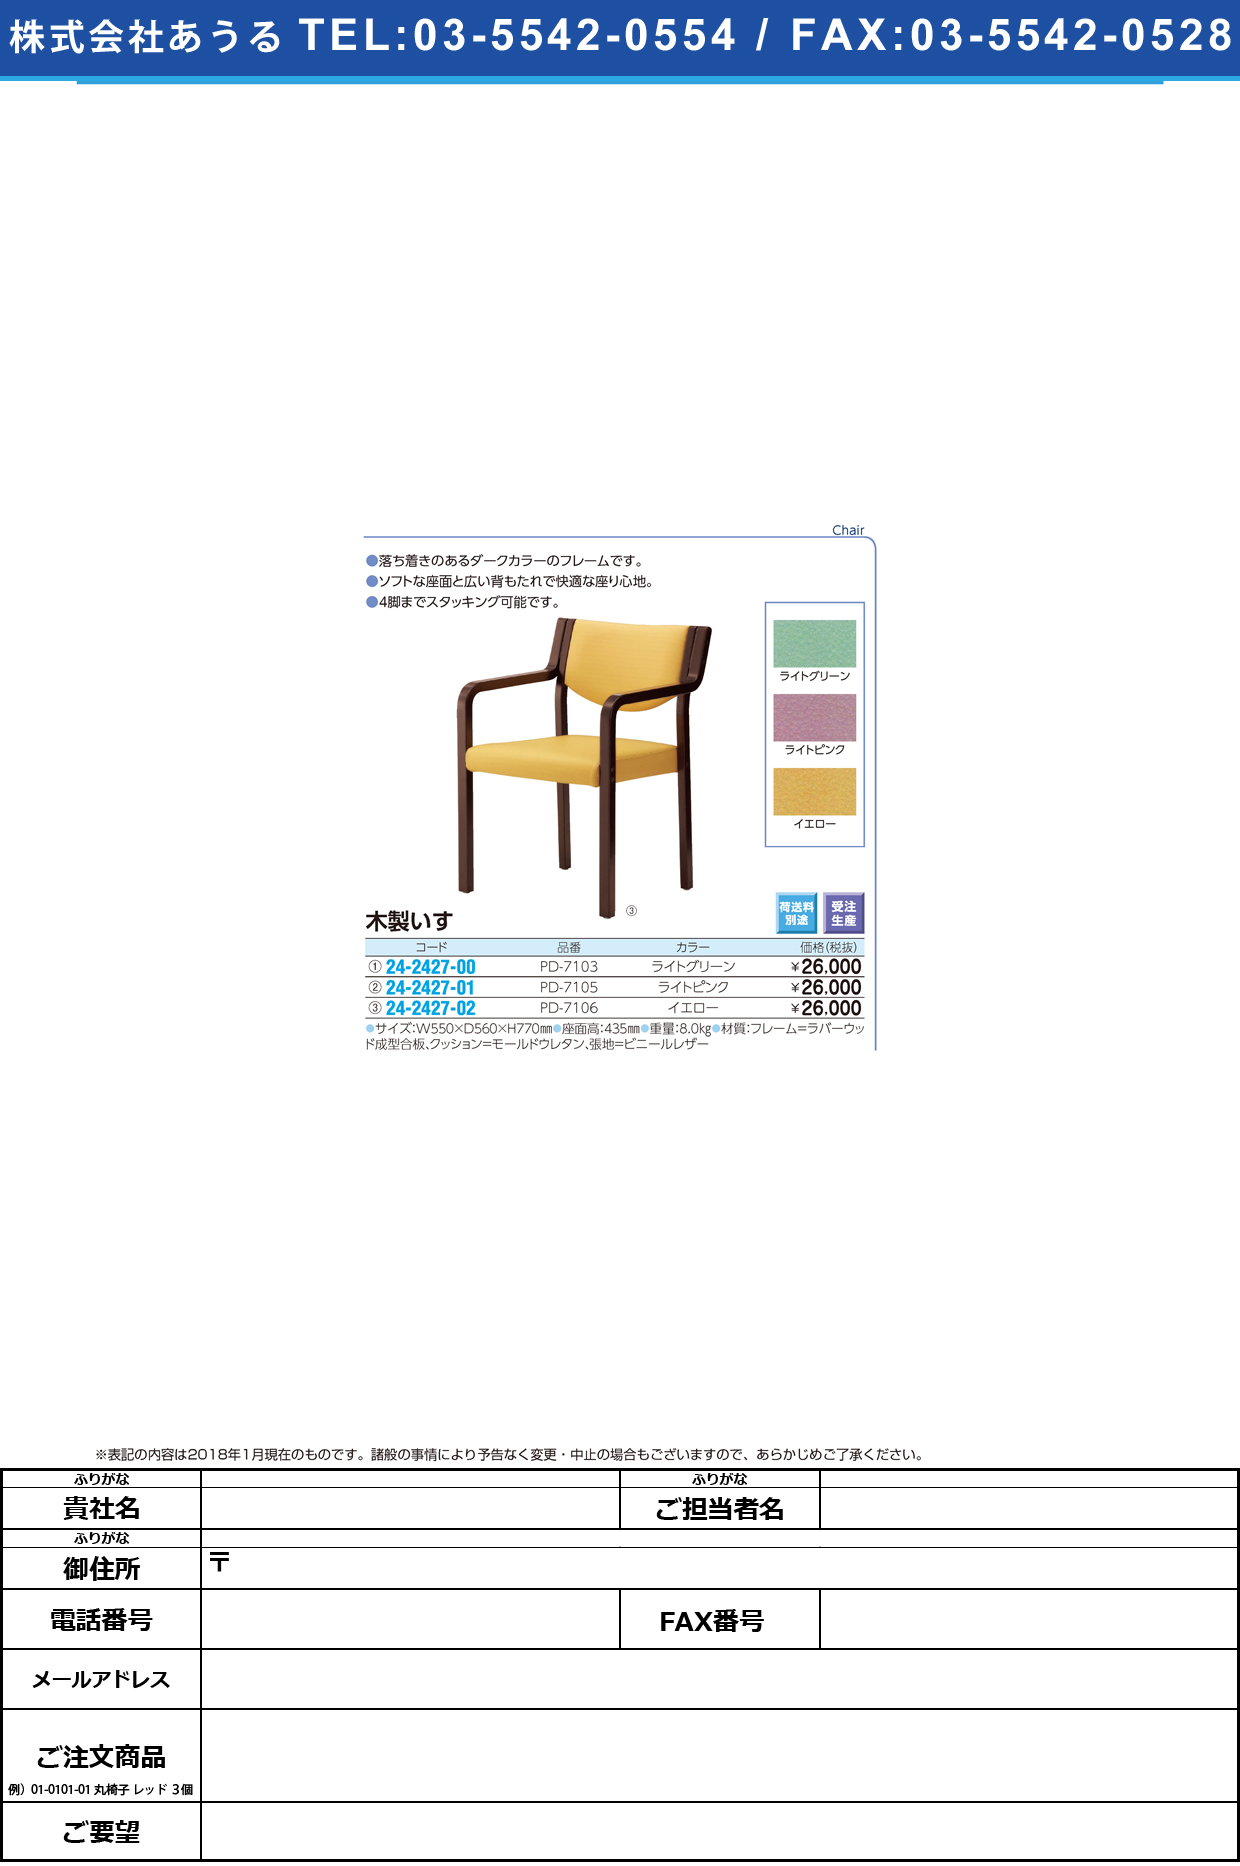 (24-2427-00)木製いす PD-7103(ﾗｲﾄｸﾞﾘｰﾝ) ﾓｸｾｲｲｽ【1台単位】【2018年カタログ商品】